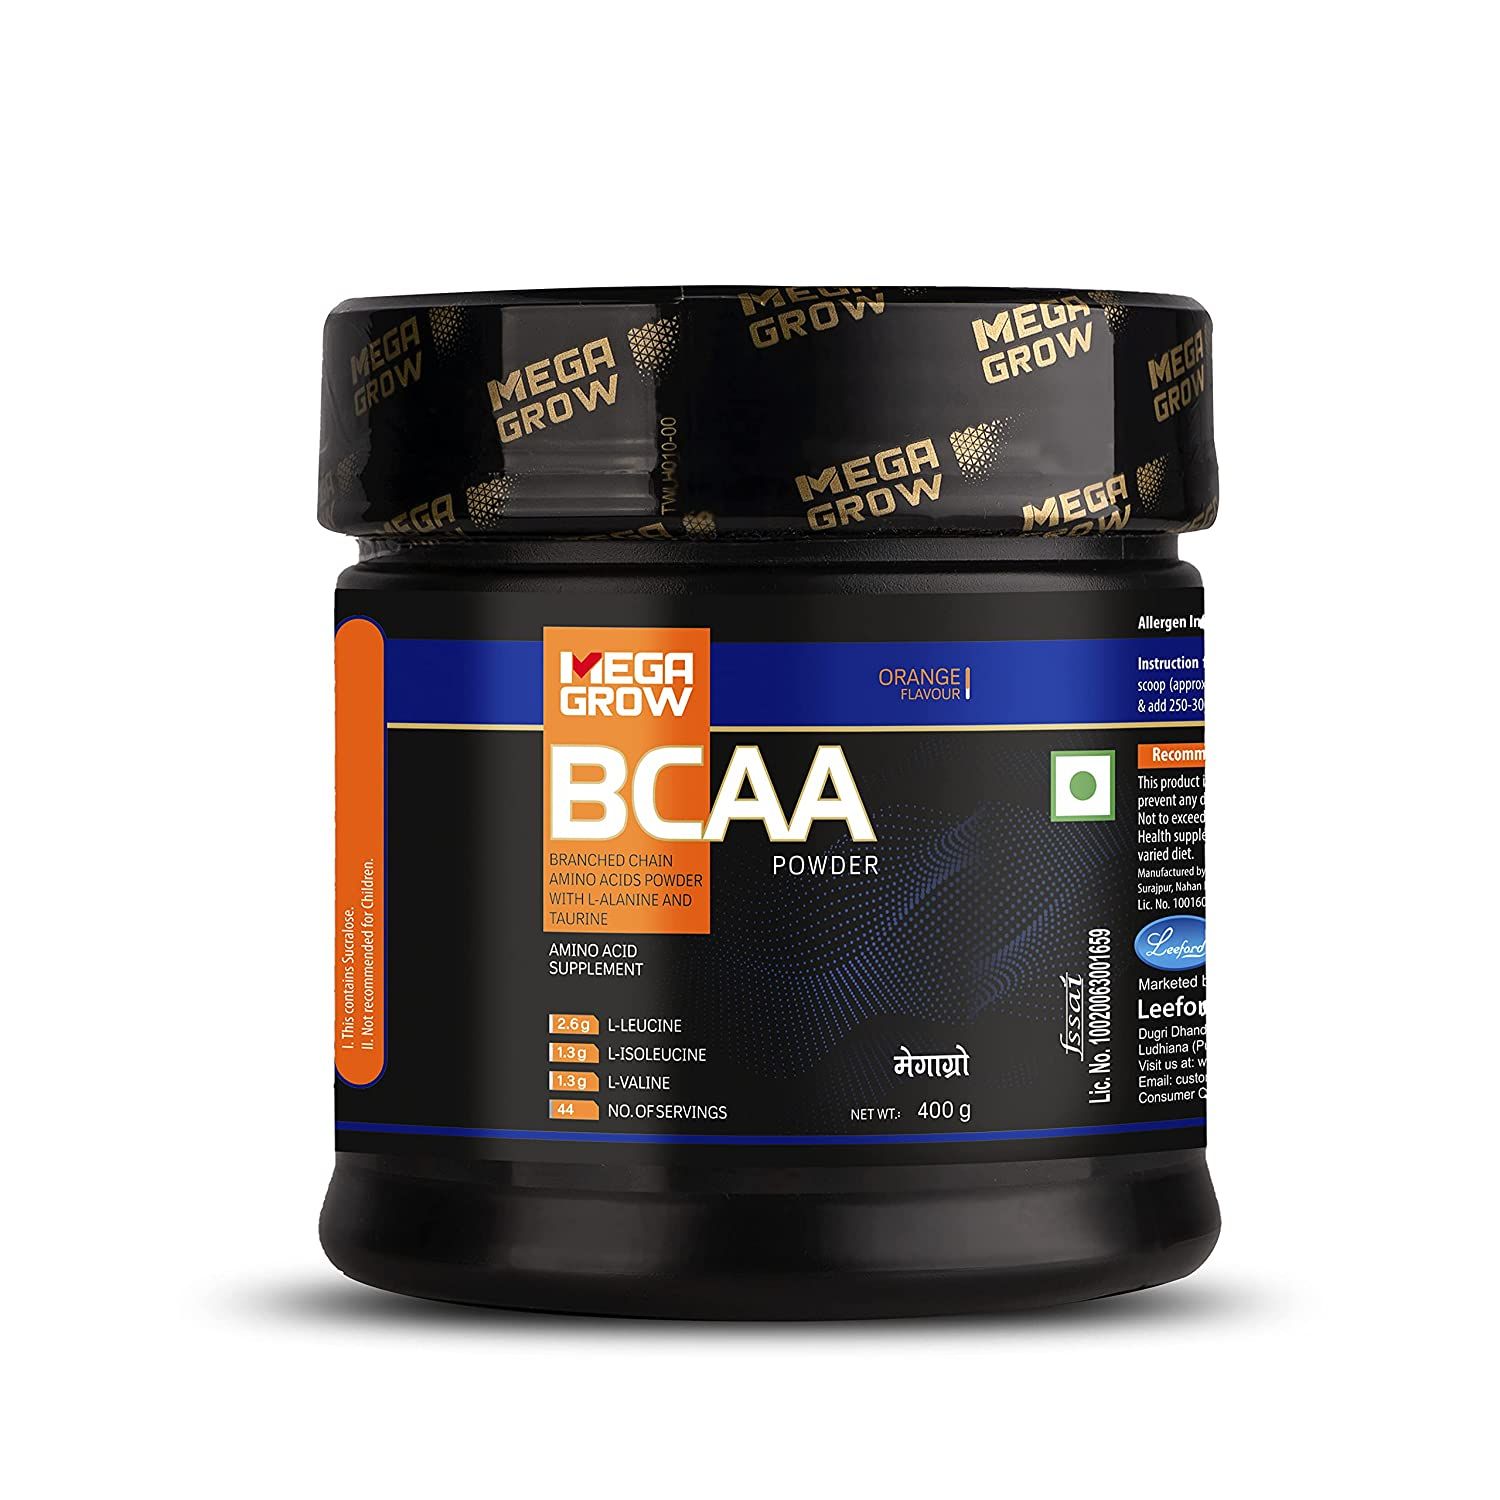 Mega Grow BCAA Suplement Powder Image